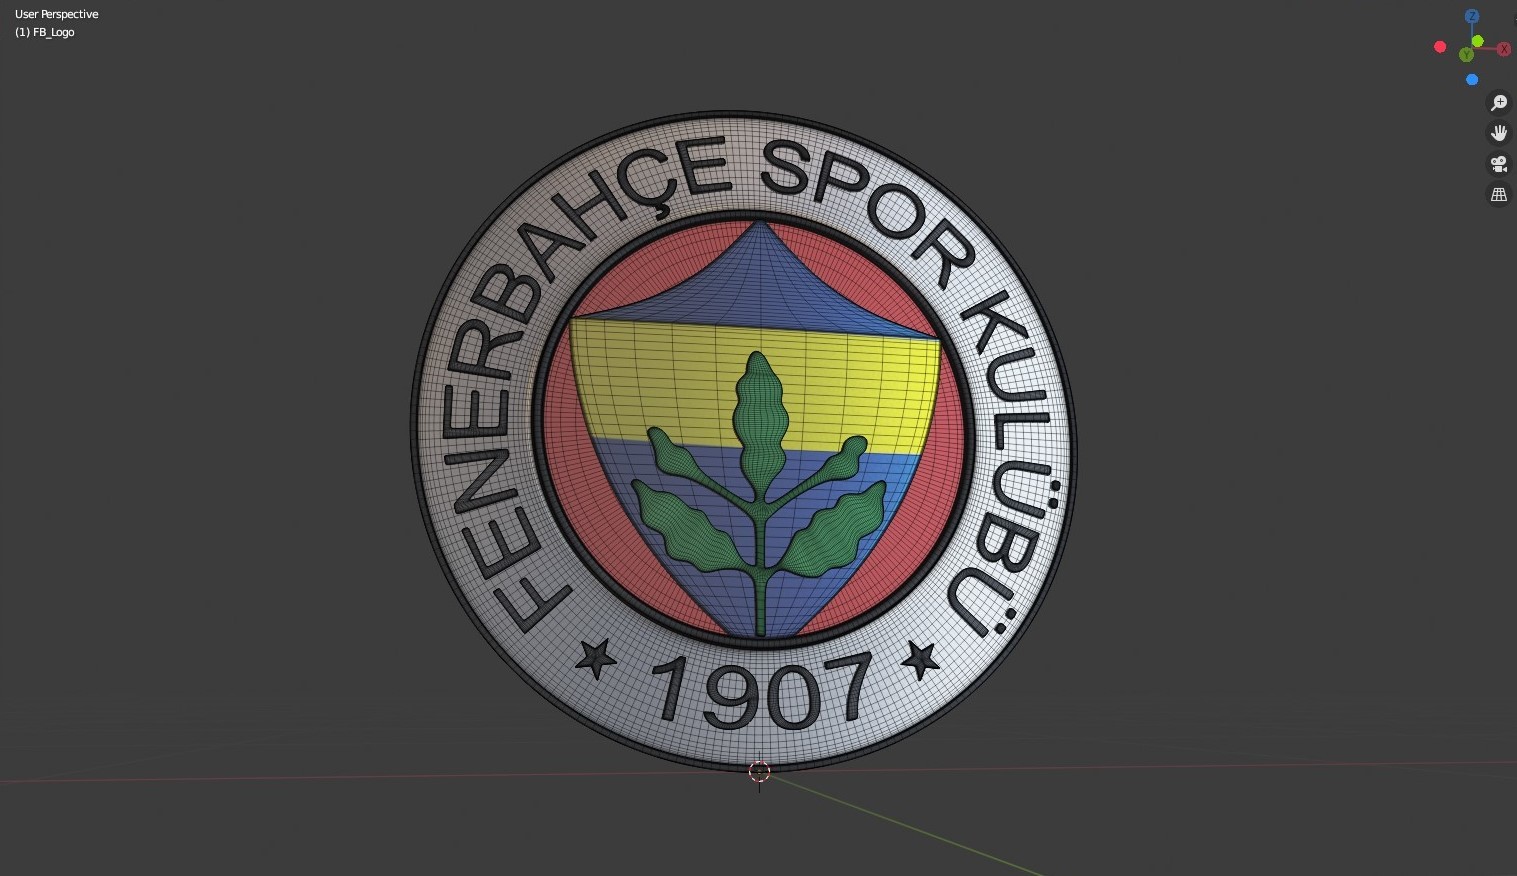 Fenerbahce logo | Cap